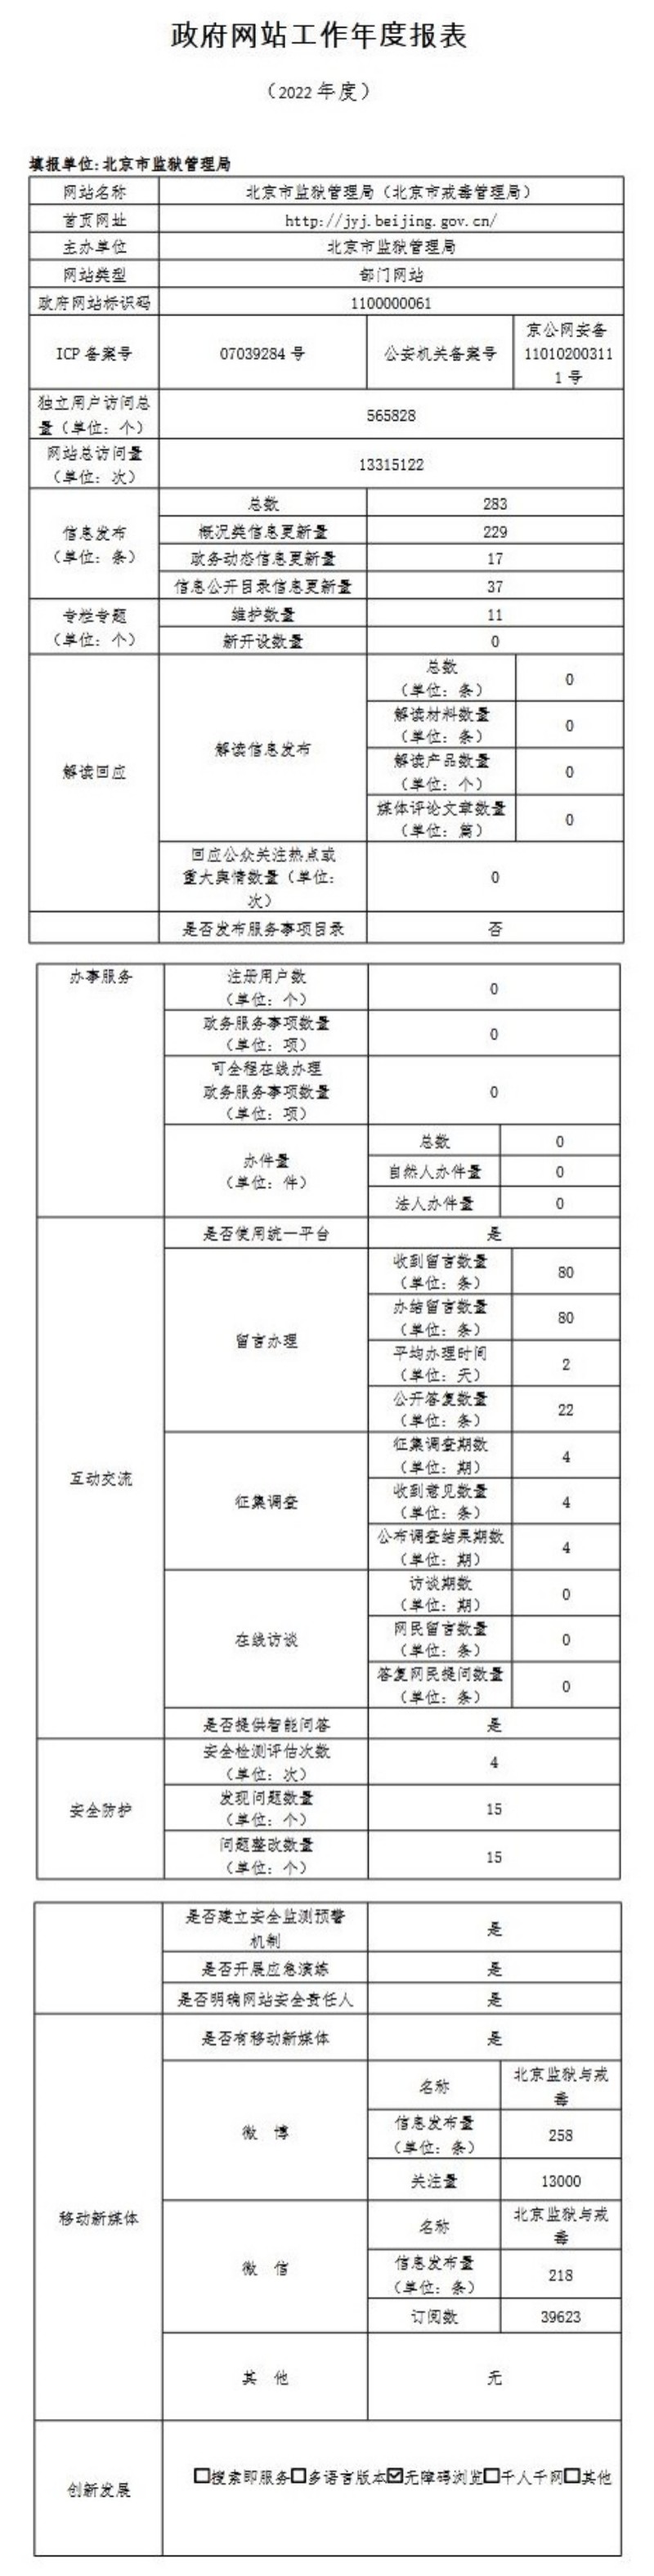 北京市监狱管理局2022年政府网站年度工作报表